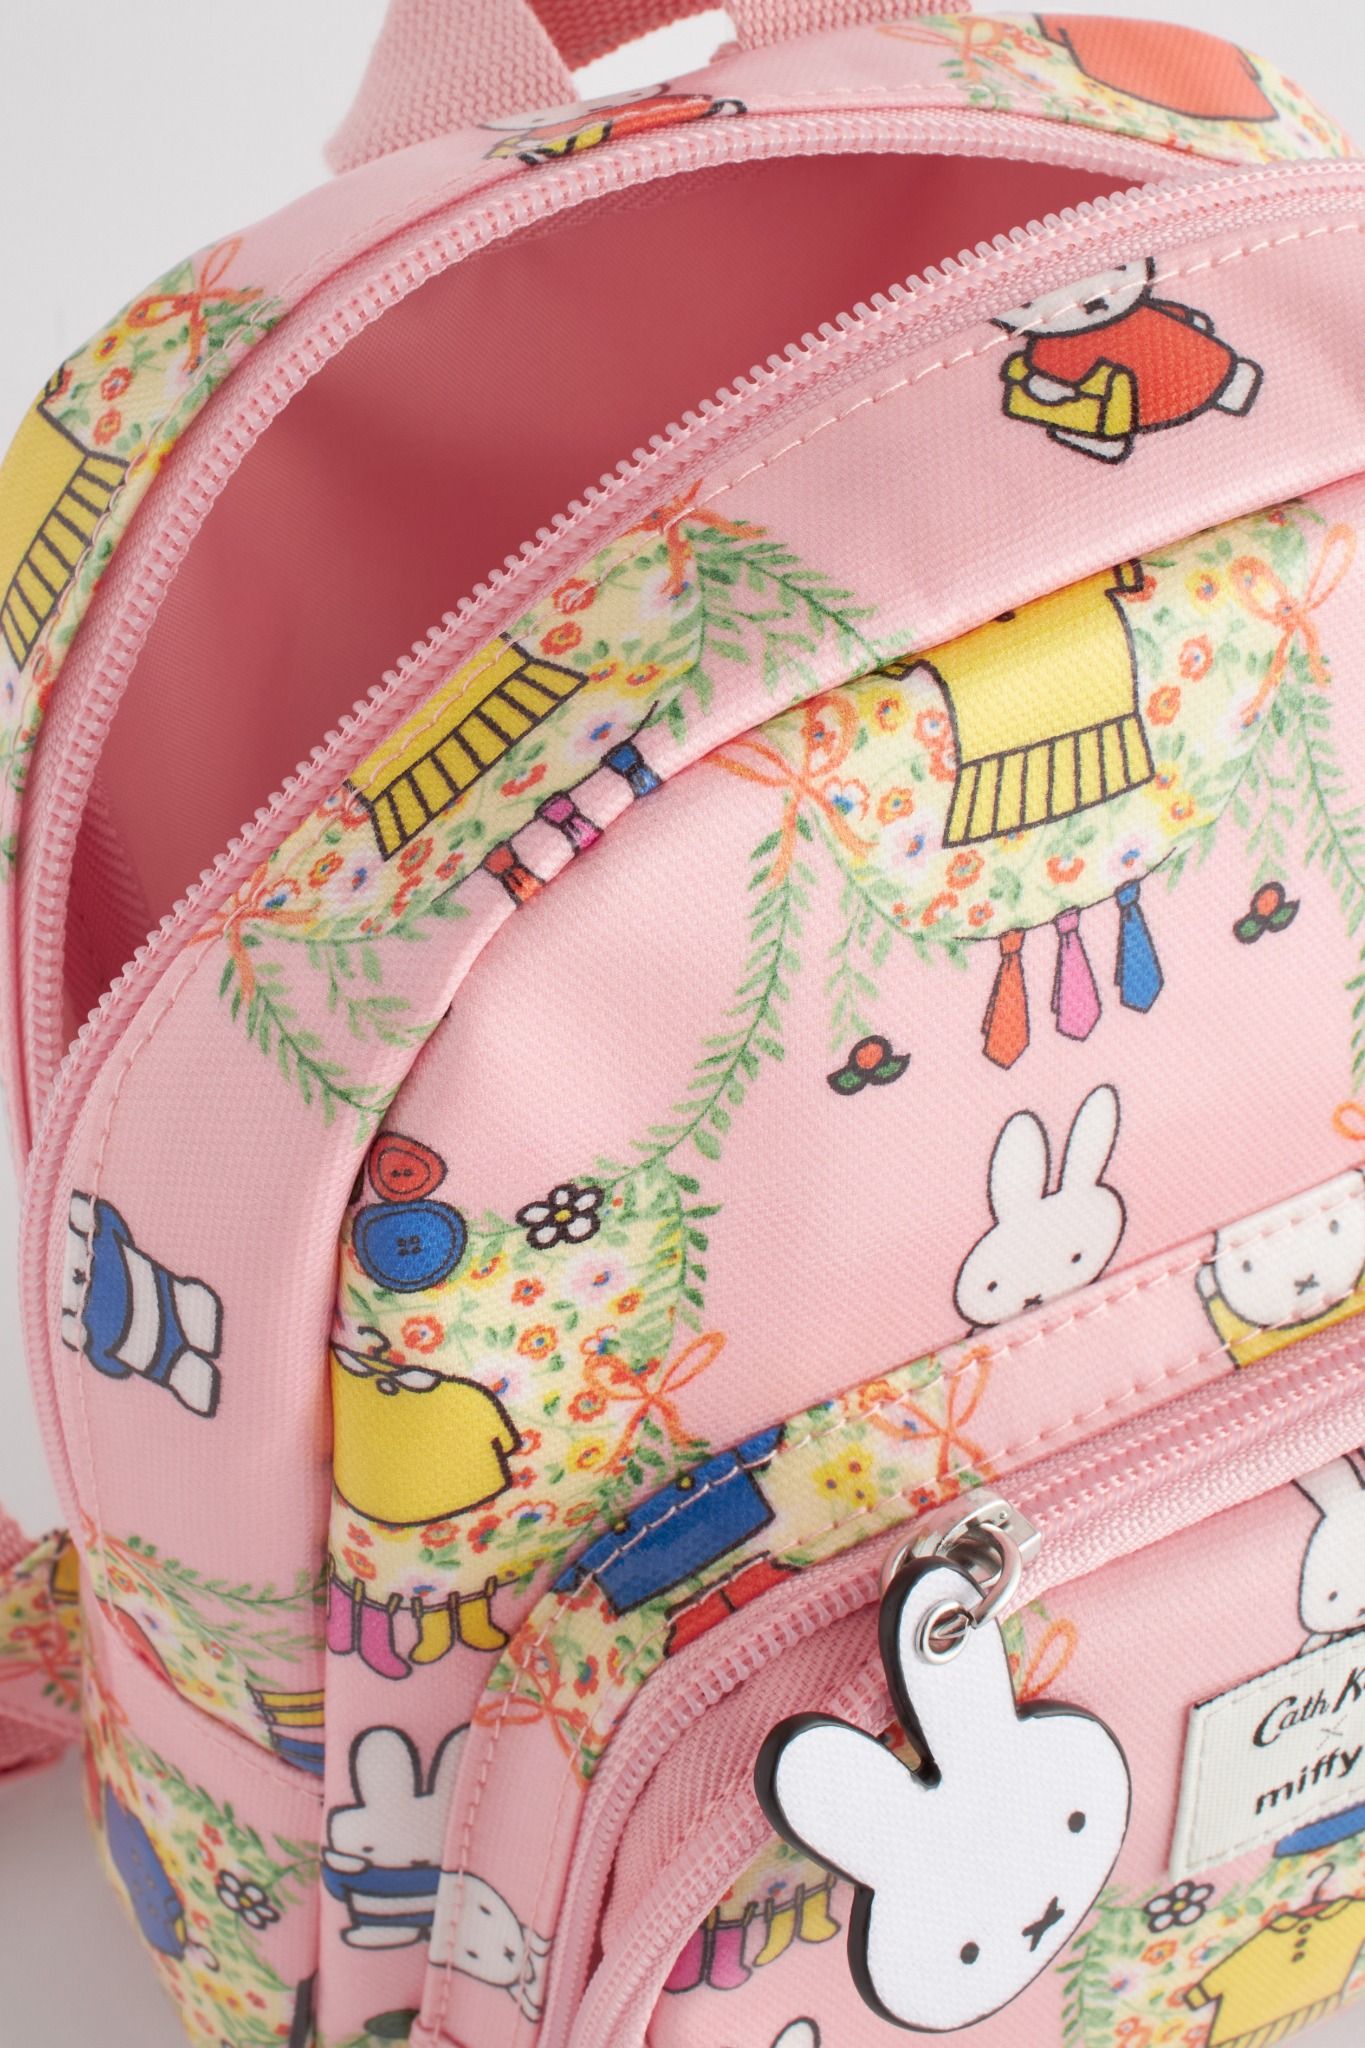  Ba lô cho bé /Kids Mini Backpack - Miffy Placement - Pink 